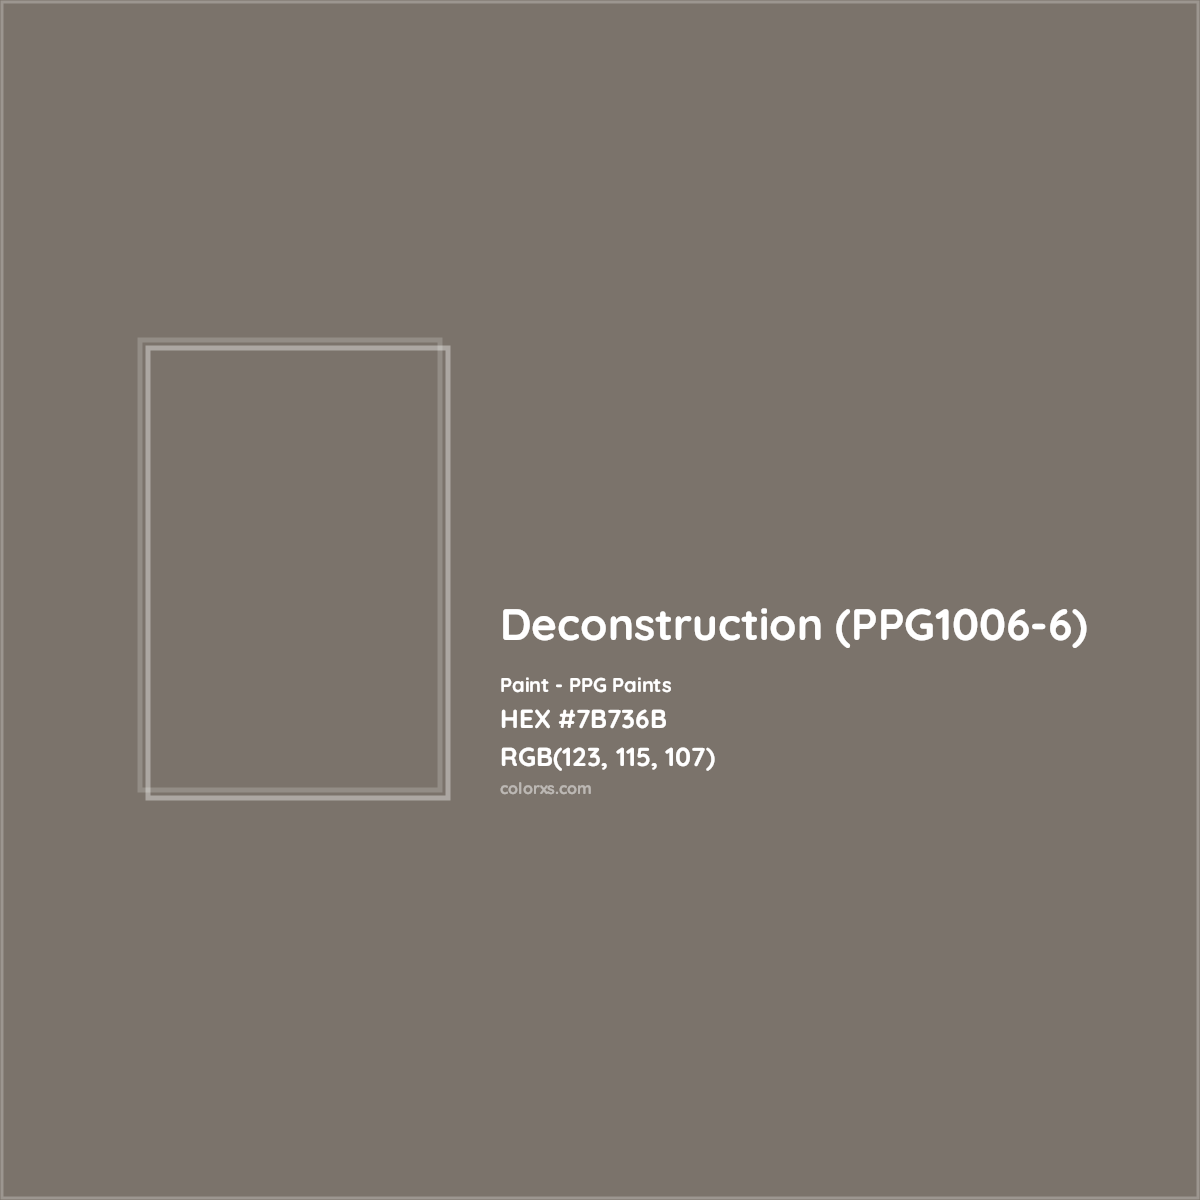 HEX #7B736B Deconstruction (PPG1006-6) Paint PPG Paints - Color Code